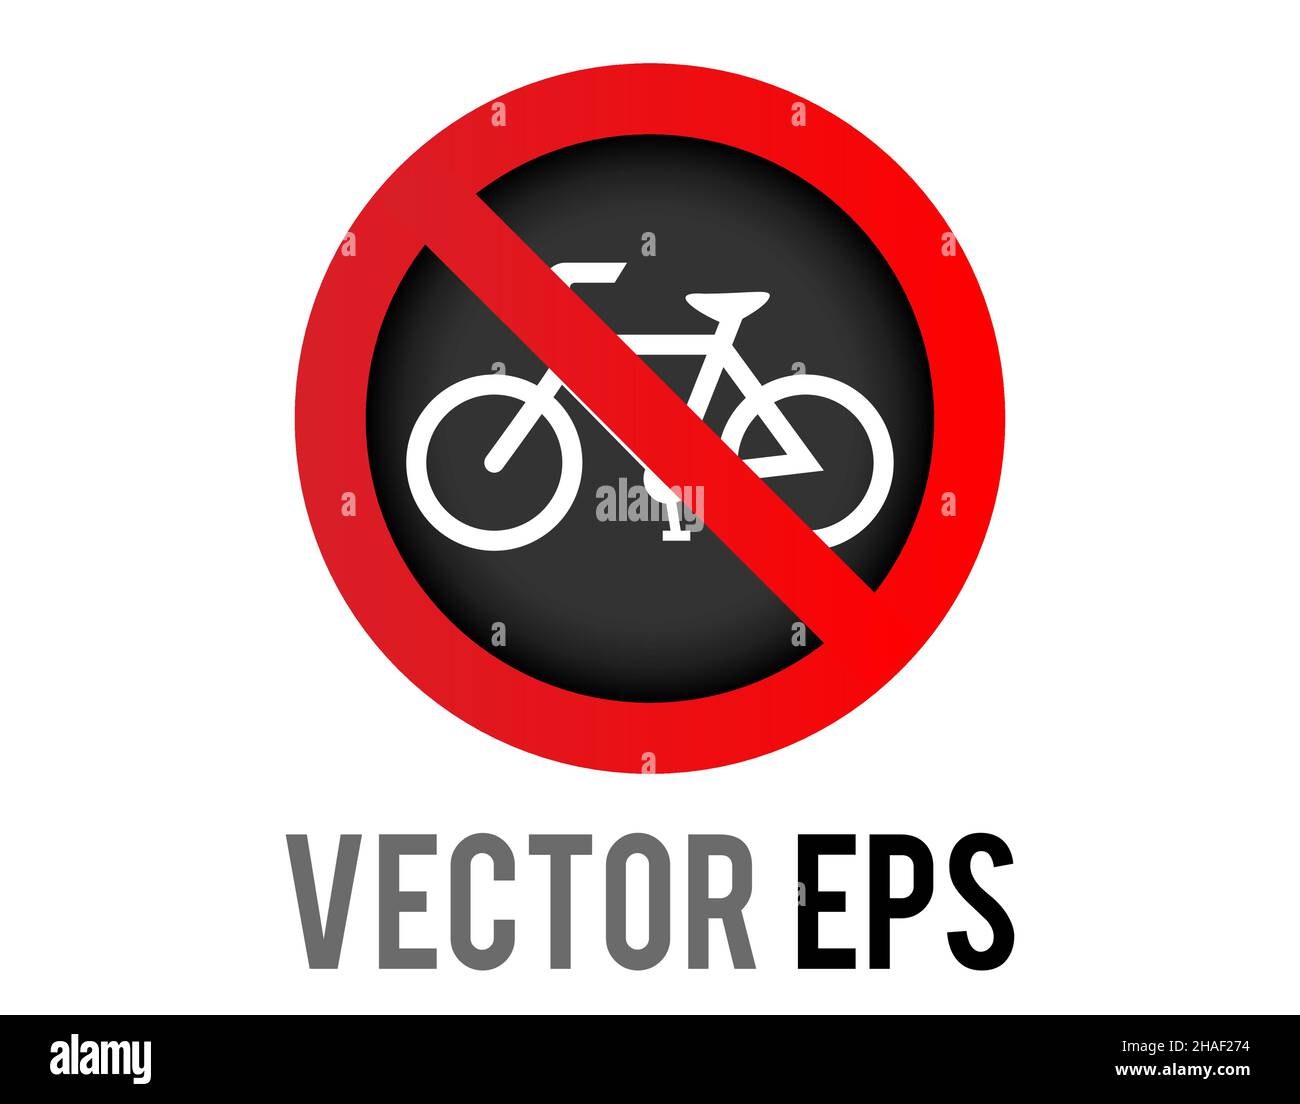 L'icona del cerchio rosso isolato con la bicicletta e il tratto rosso indica che le biciclette sono vietate da questa posizione. Illustrazione Vettoriale